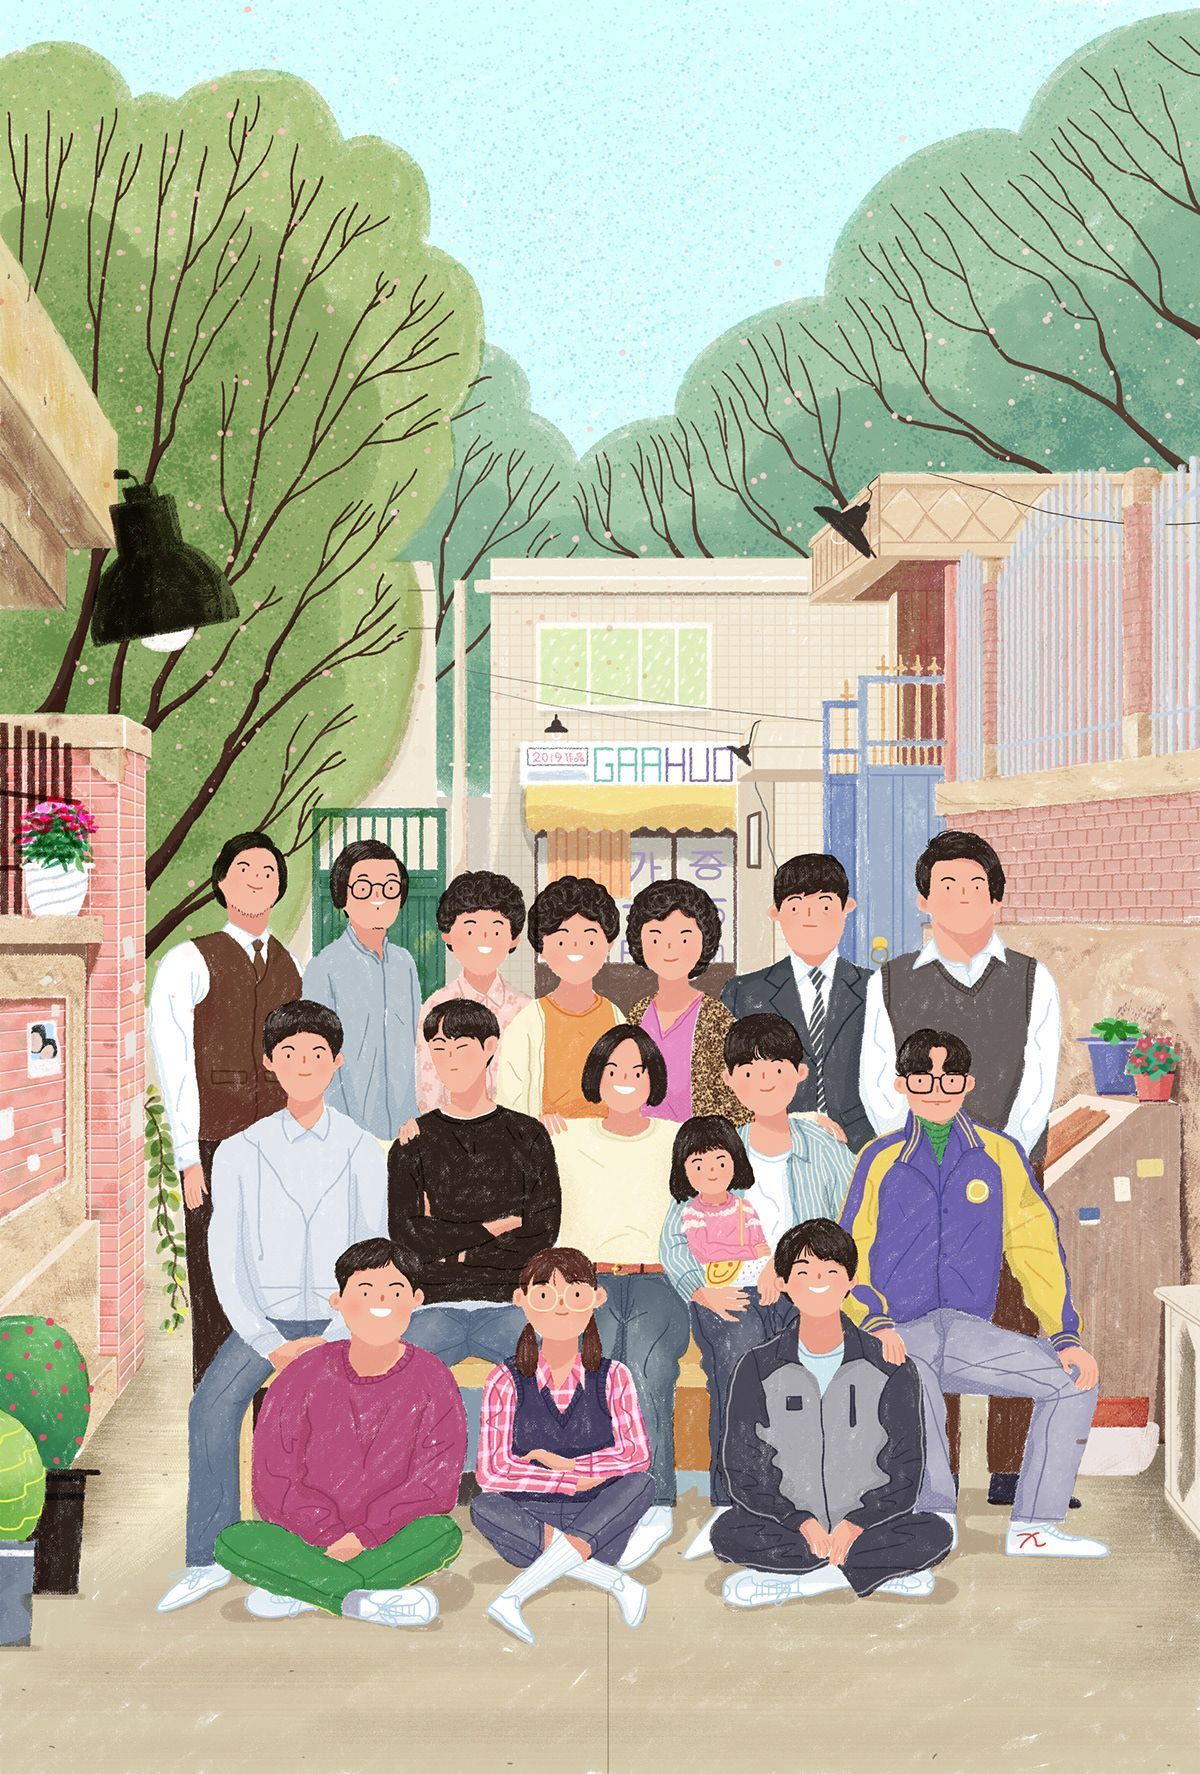 Download Reply 1988 Park Bo-gum Korean Actor Wallpaper